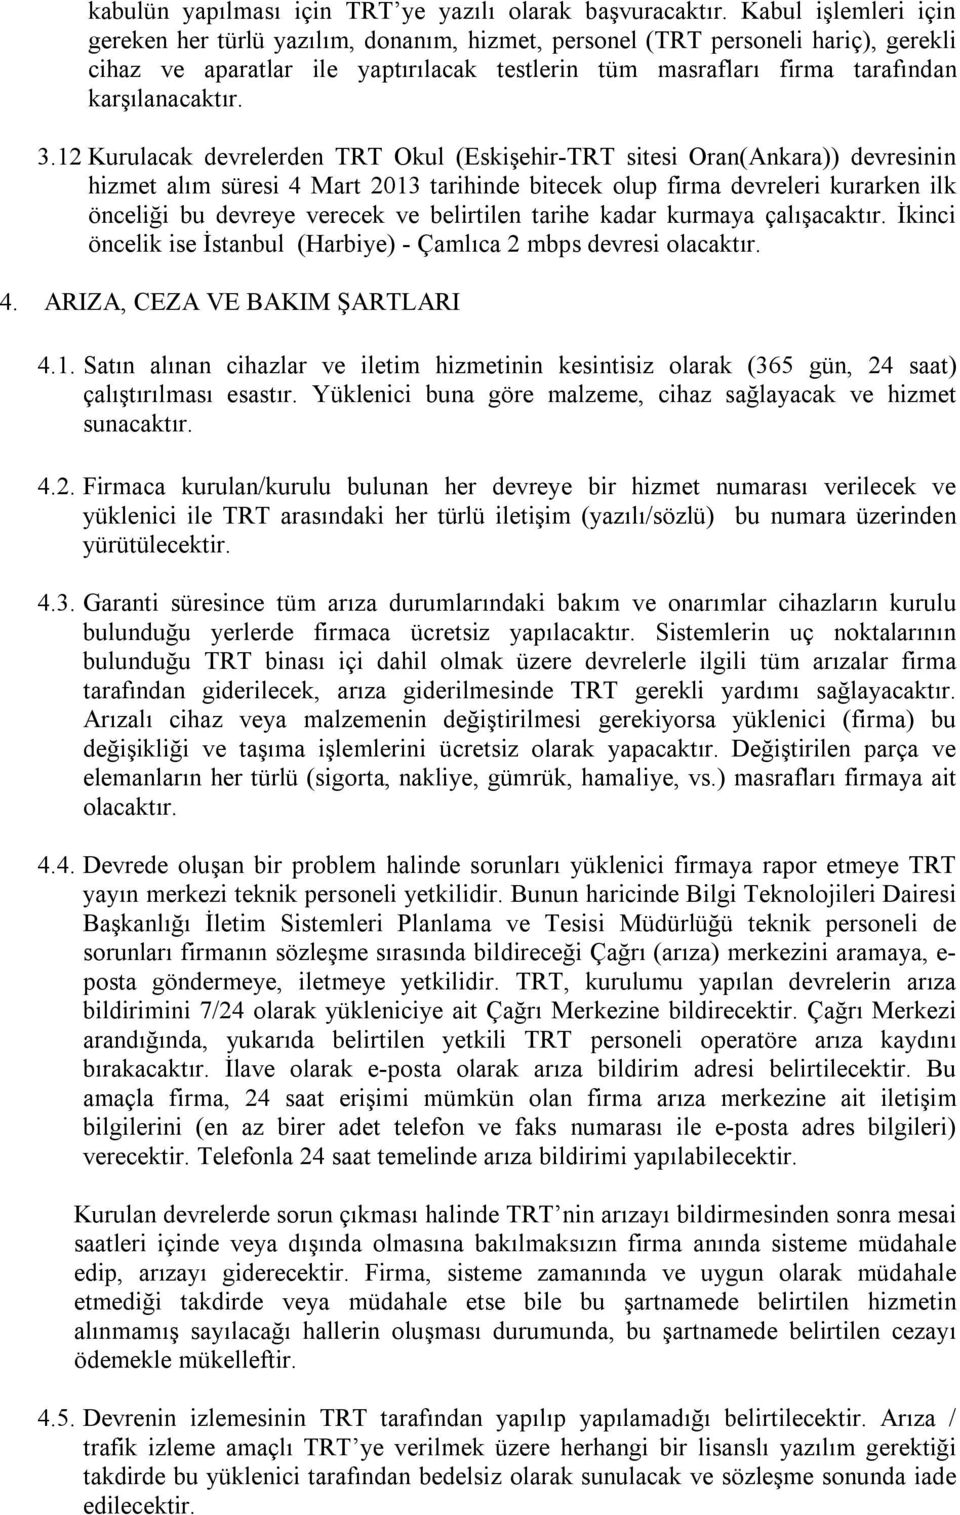 3.12 Kurulacak devrelerden TRT Okul (Eskişehir-TRT sitesi Oran(Ankara)) devresinin hizmet alım süresi 4 Mart 2013 tarihinde bitecek olup firma devreleri kurarken ilk önceliği bu devreye verecek ve